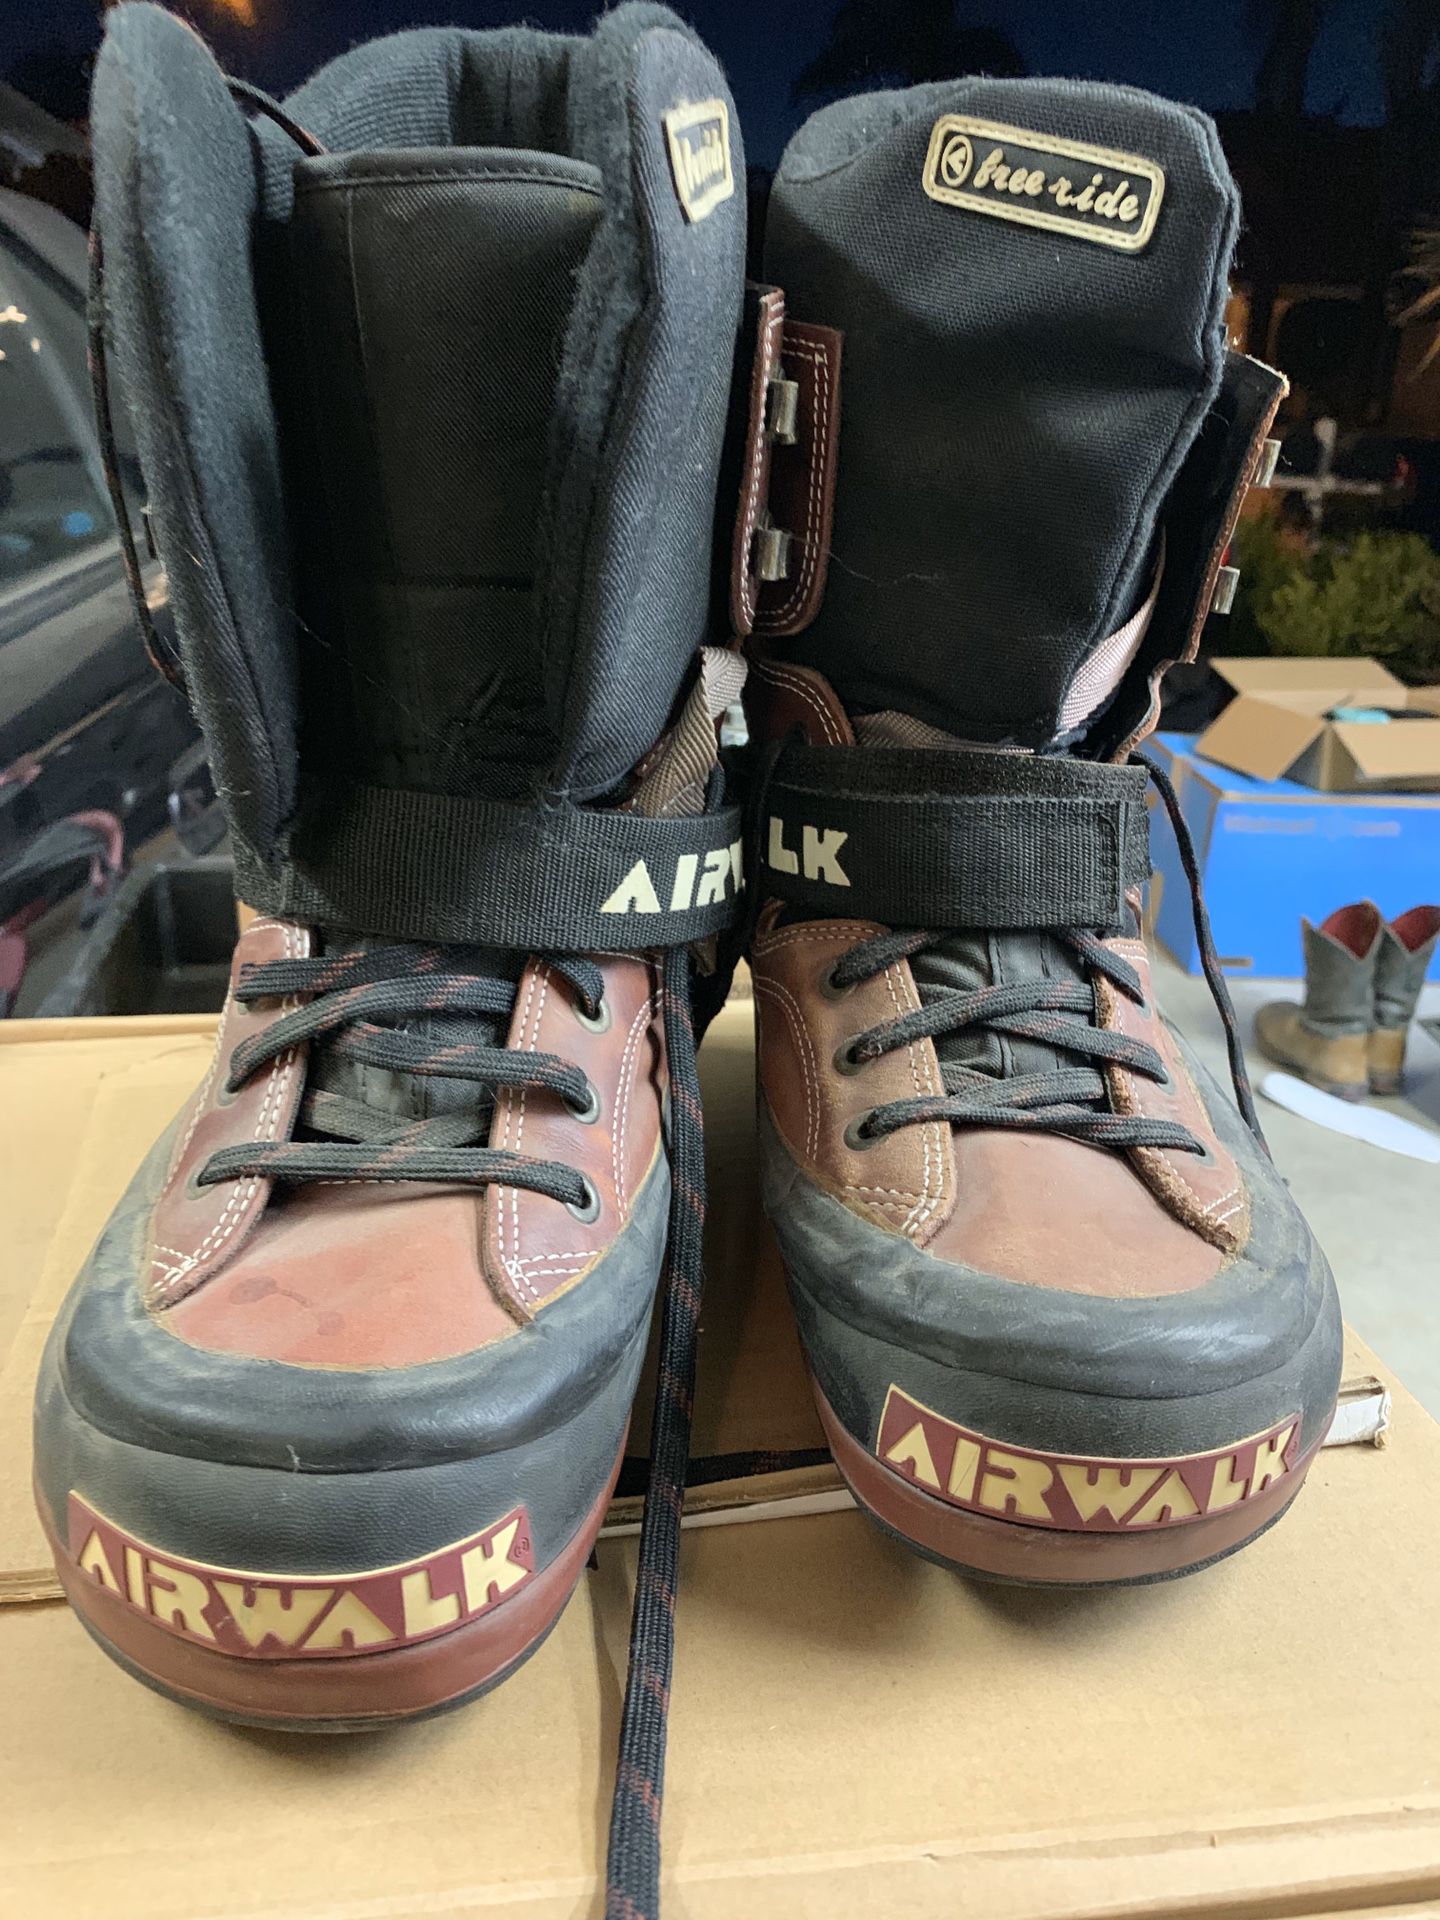 Airwalk Snowboard Boots Free Ride Size 6 Purple Grey